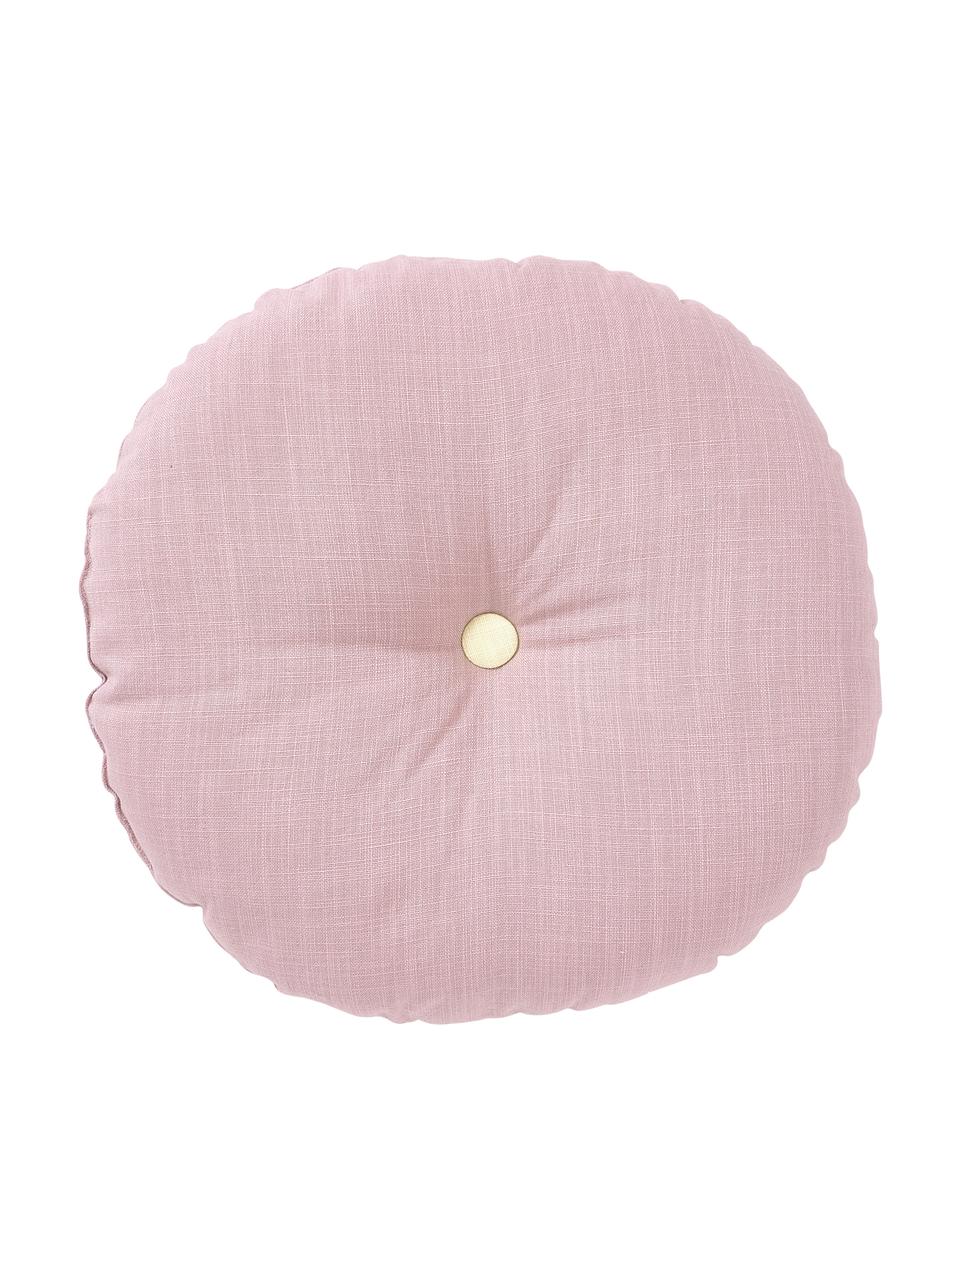 Cuscino imbottito rotondo lilla Devi, Rivestimento: 100% cotone, Rosa, viola, Ø 35 cm